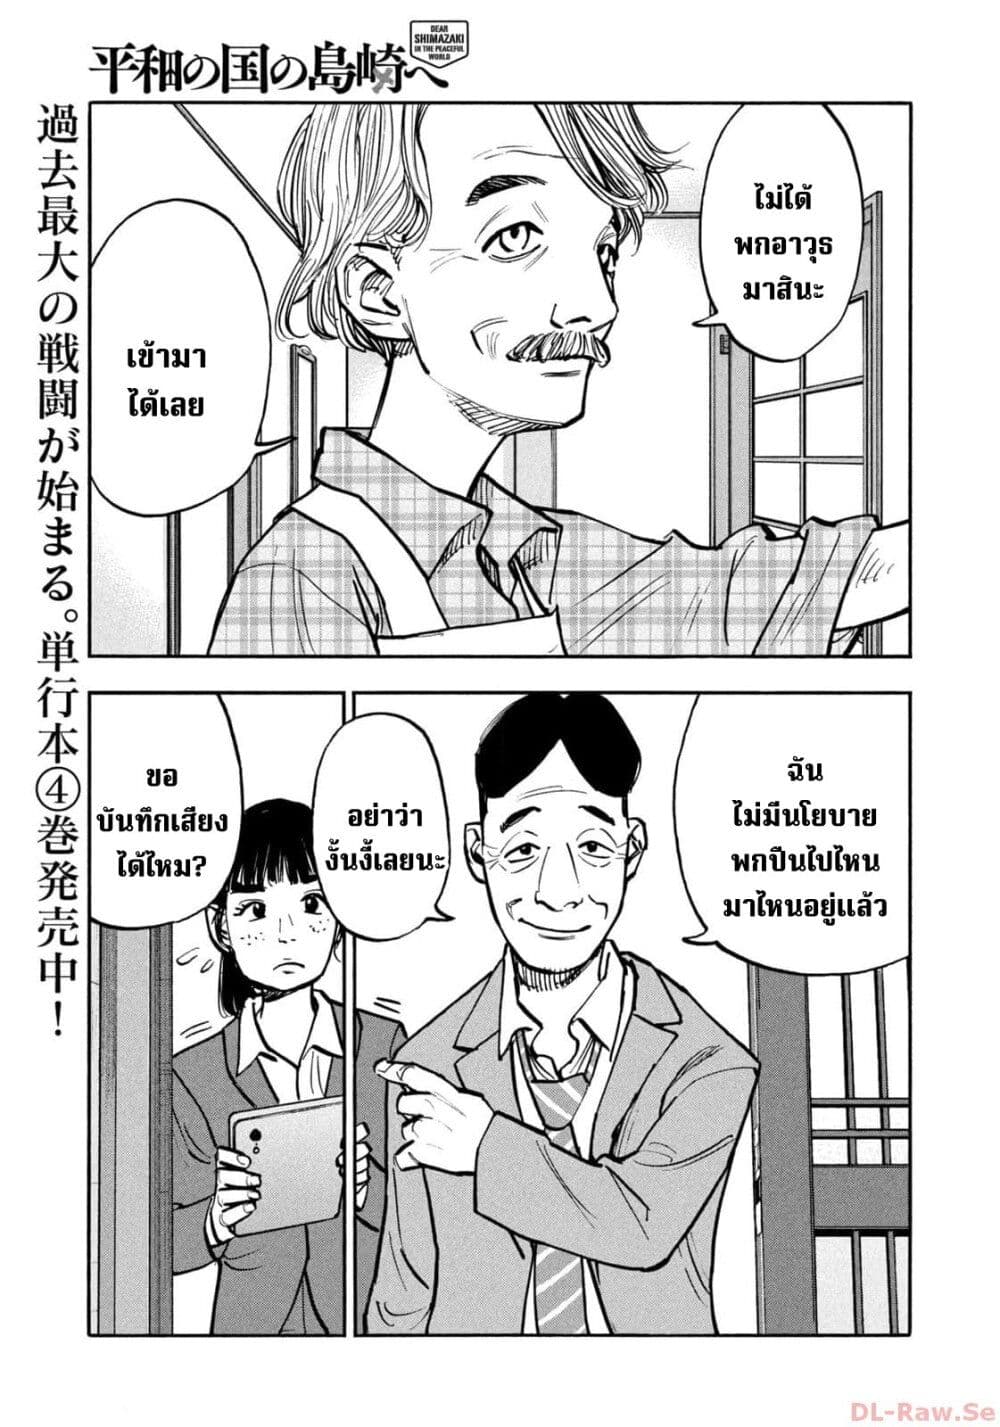 อ่านมังงะ Heiwa no Kuni no Shimazaki e ตอนที่ 49/5.jpg